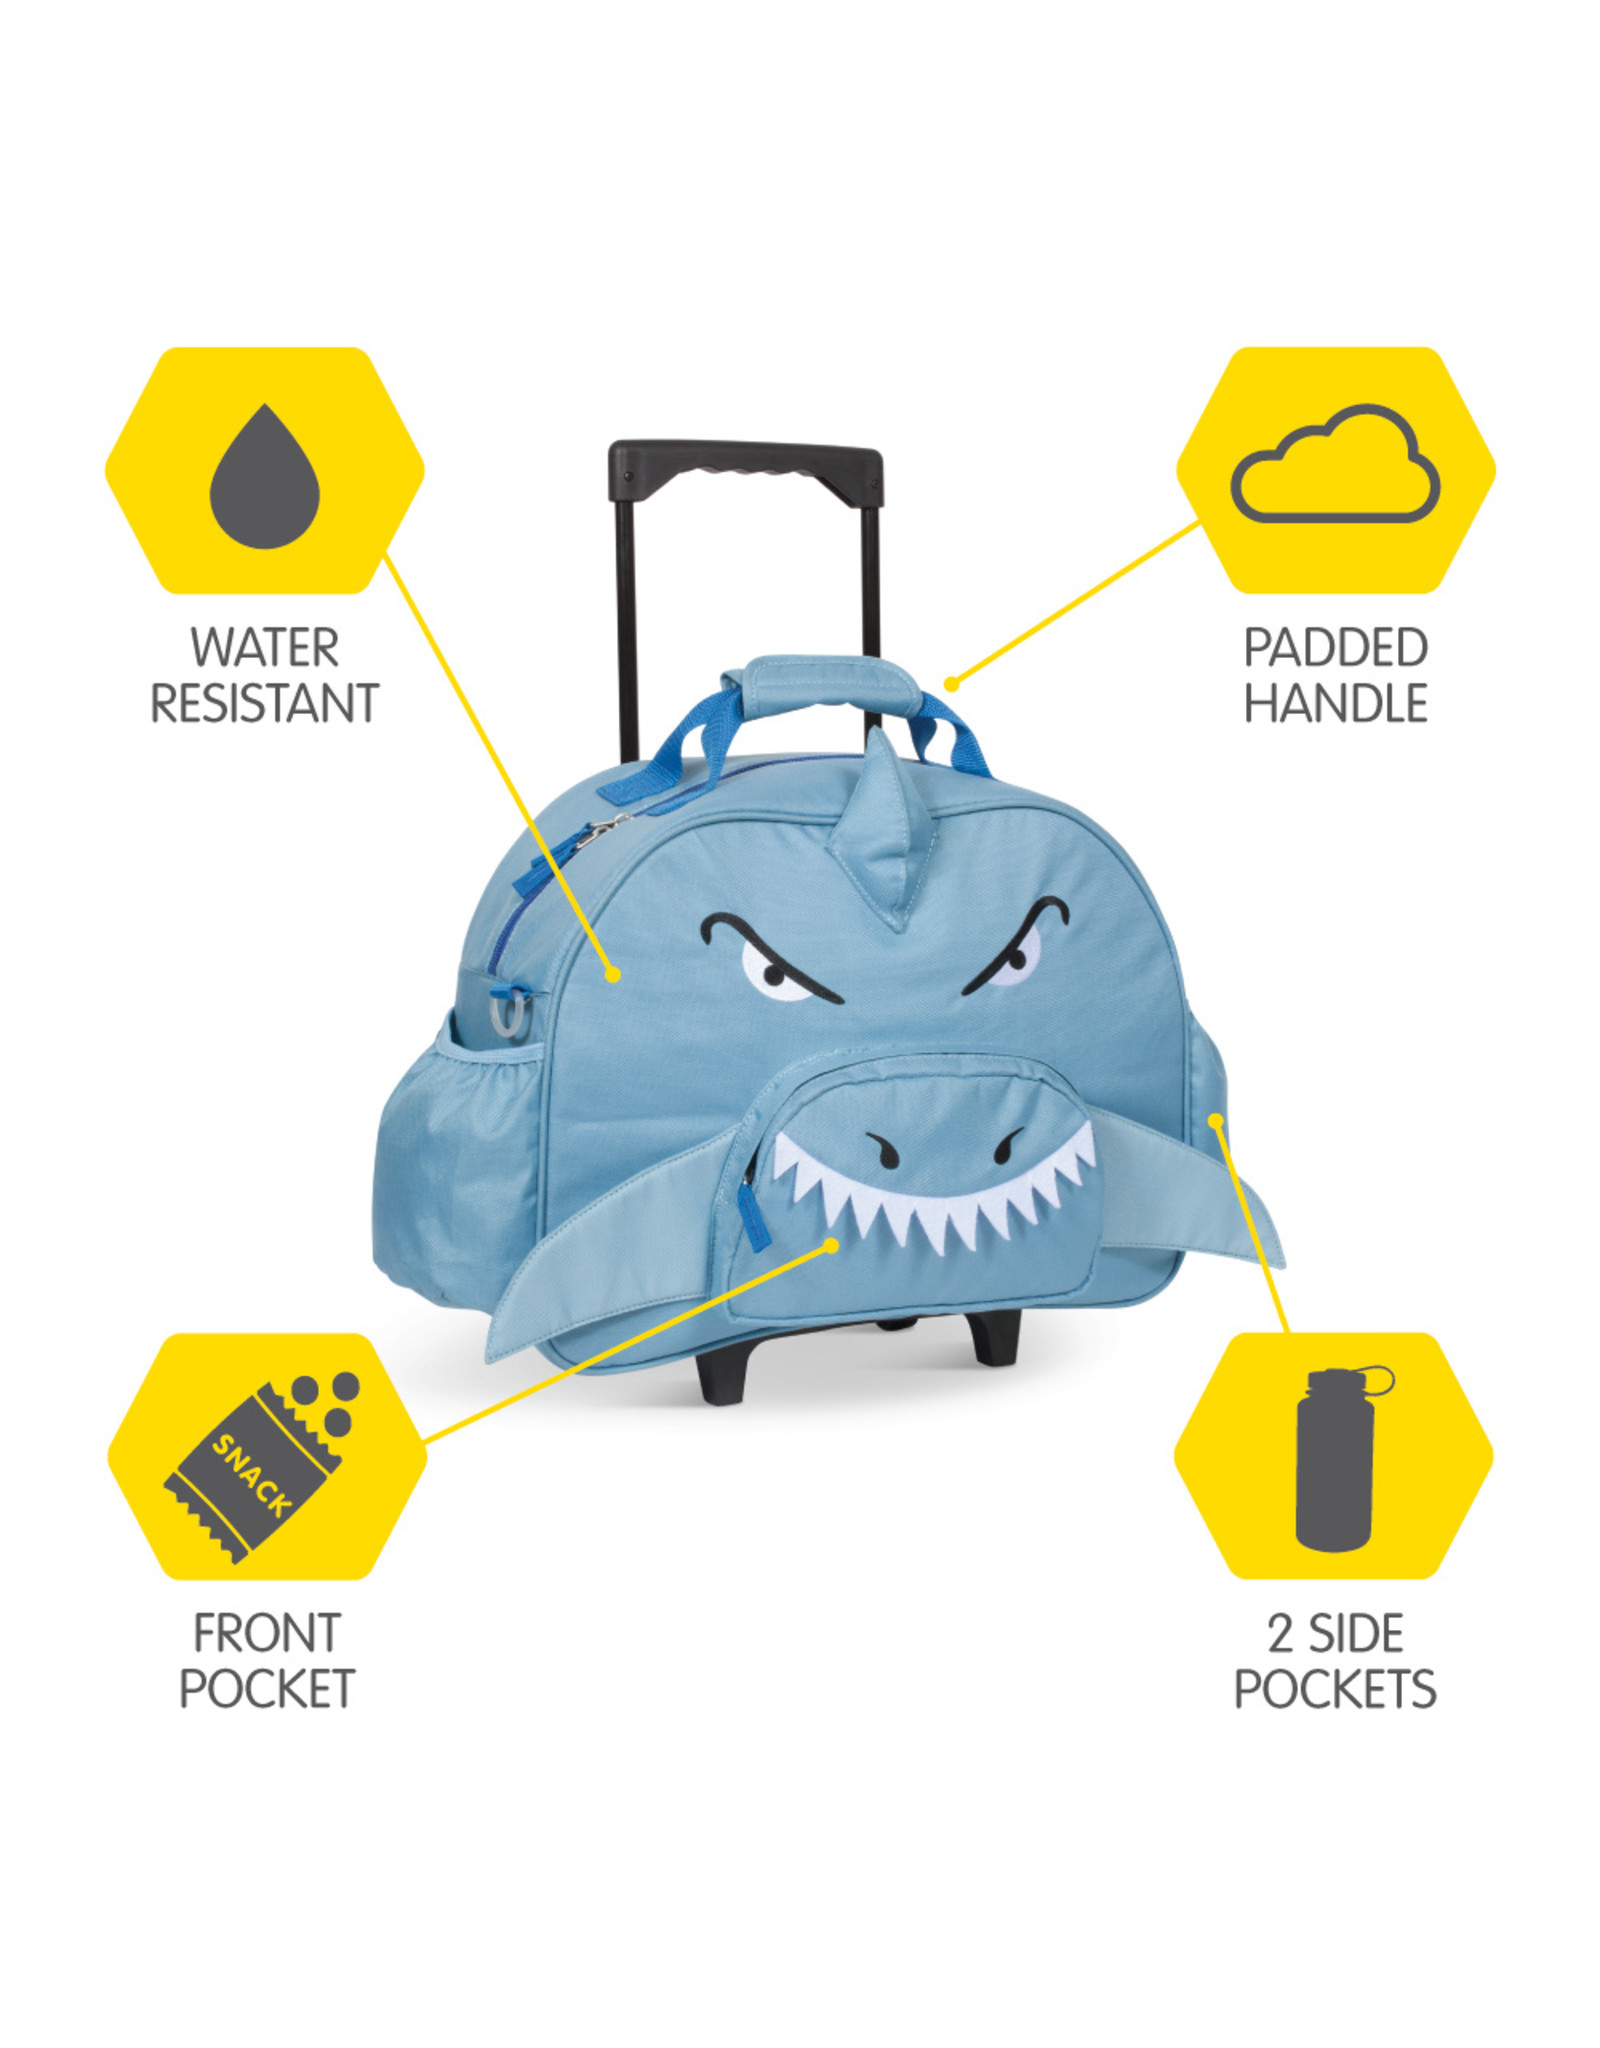 Bixbee Traveler Luggage Shark